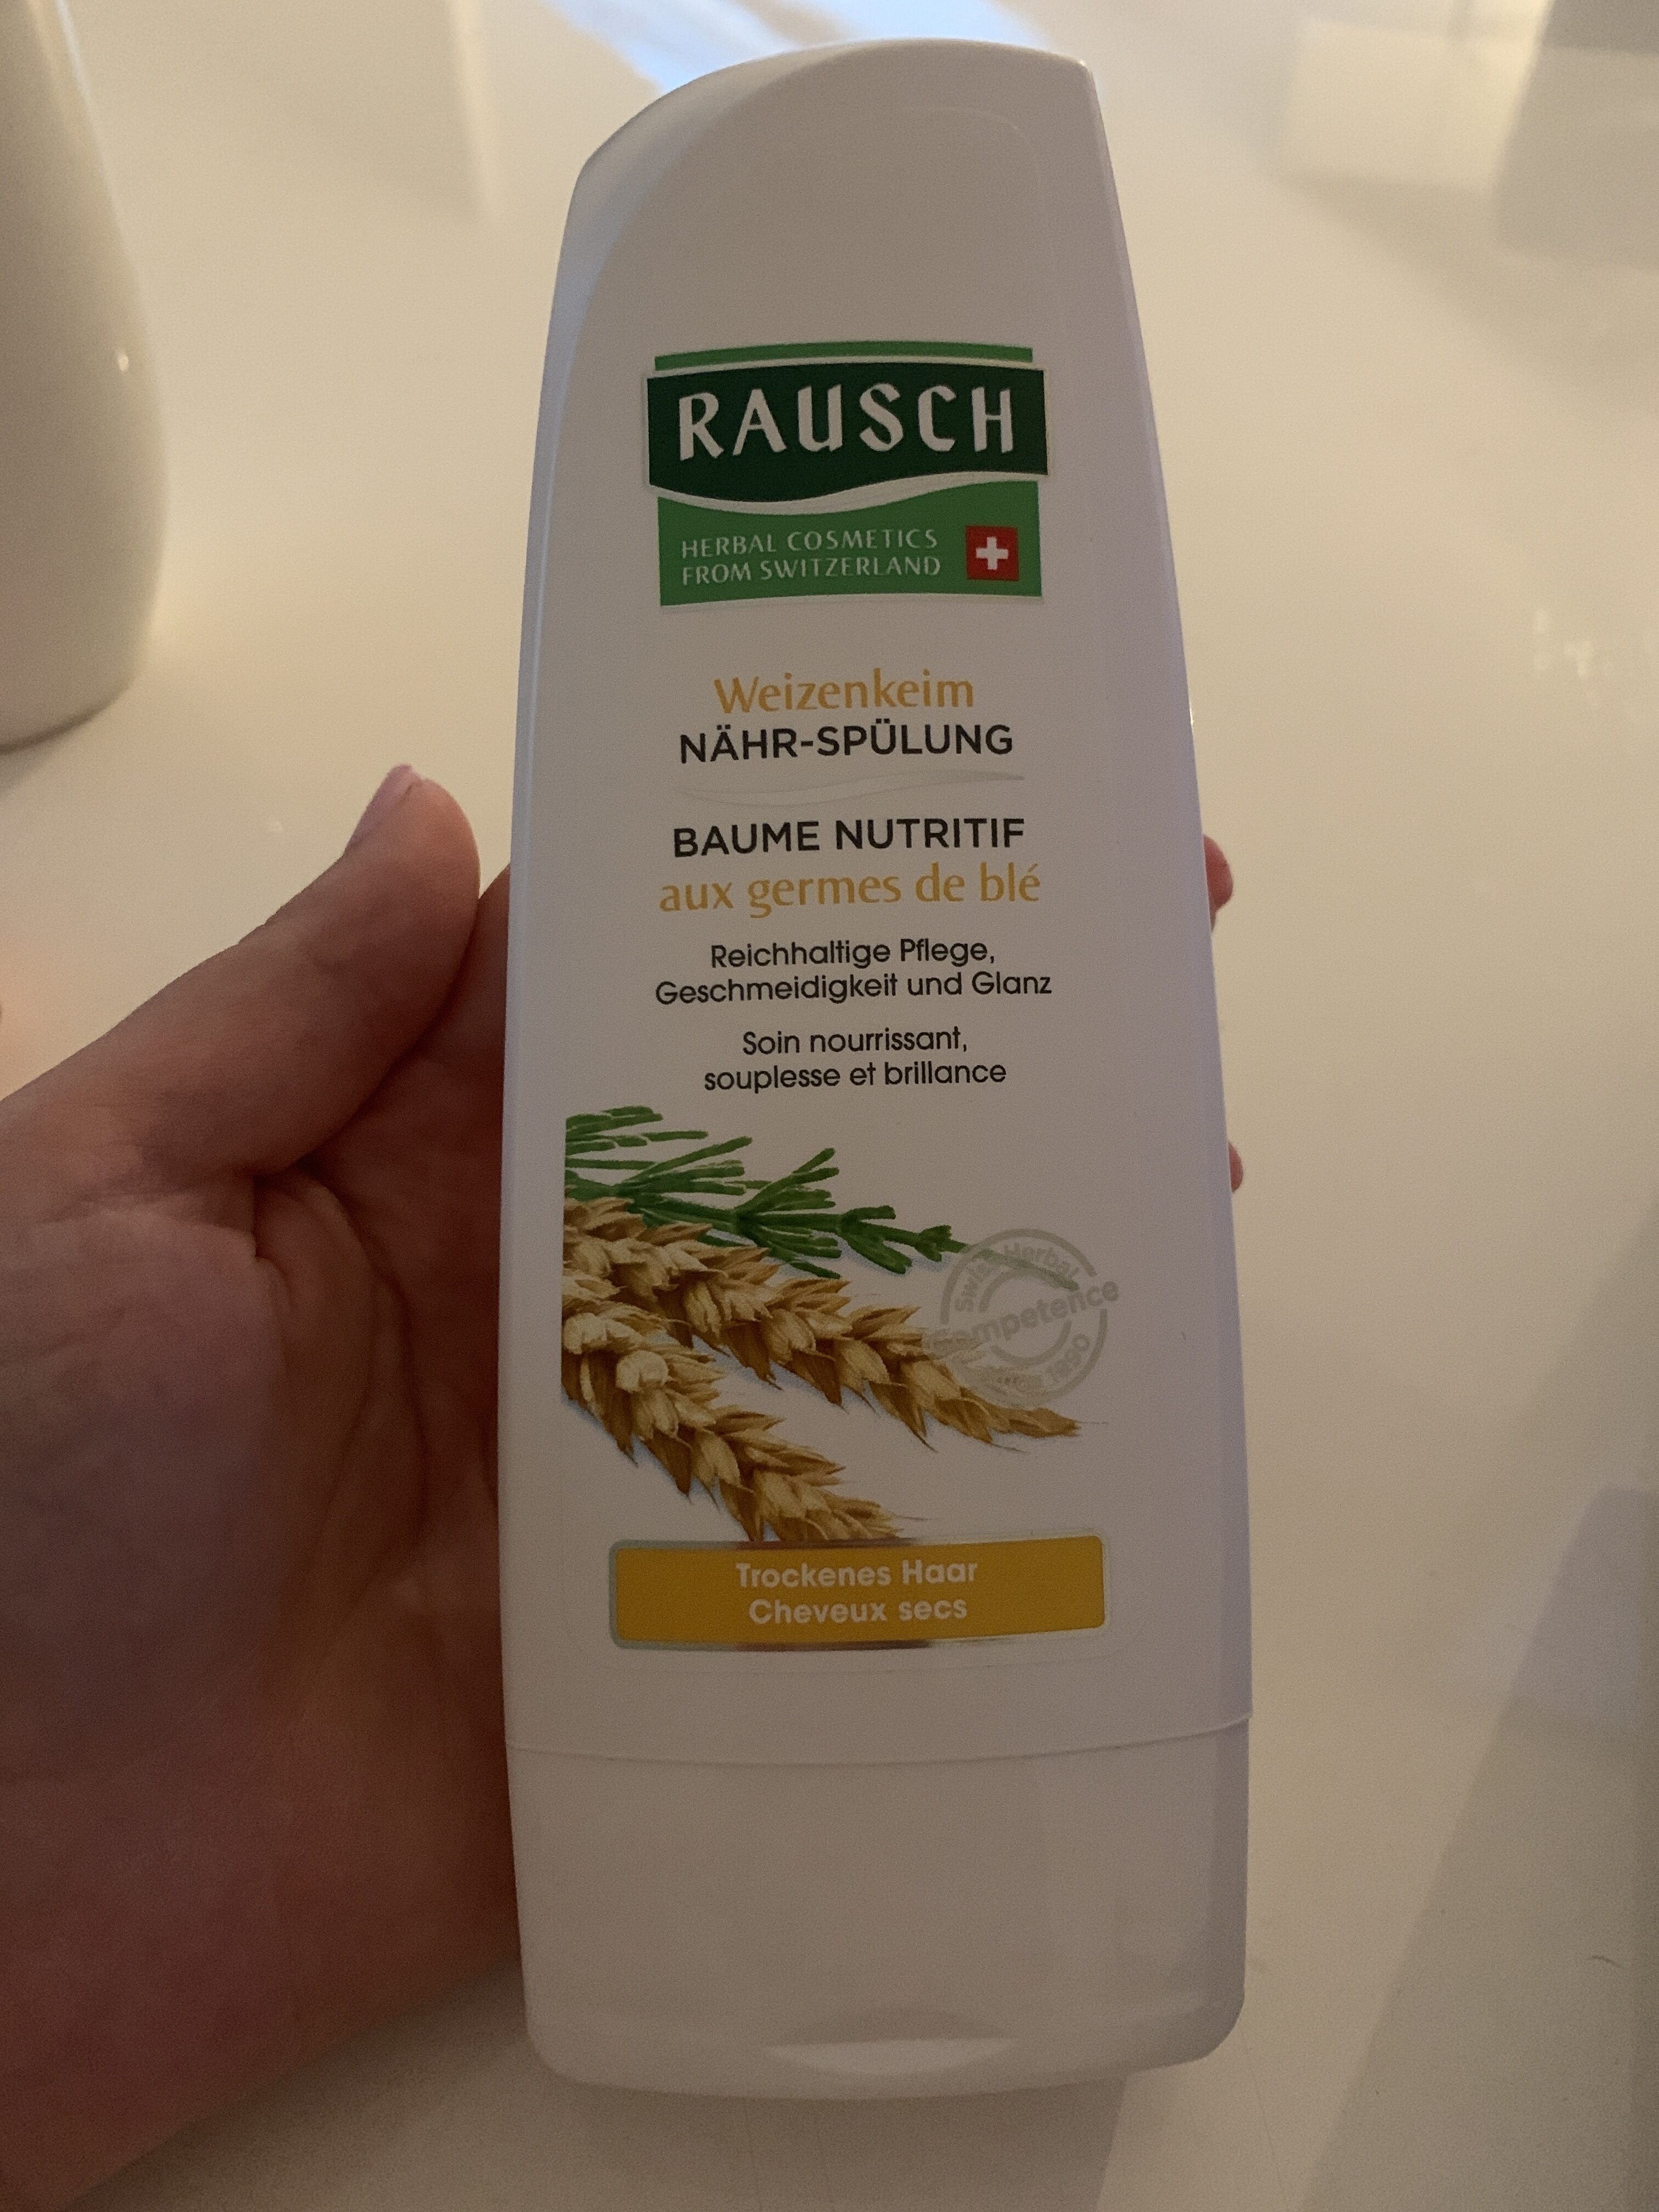 Raush baume nutritif - Tuote - fr